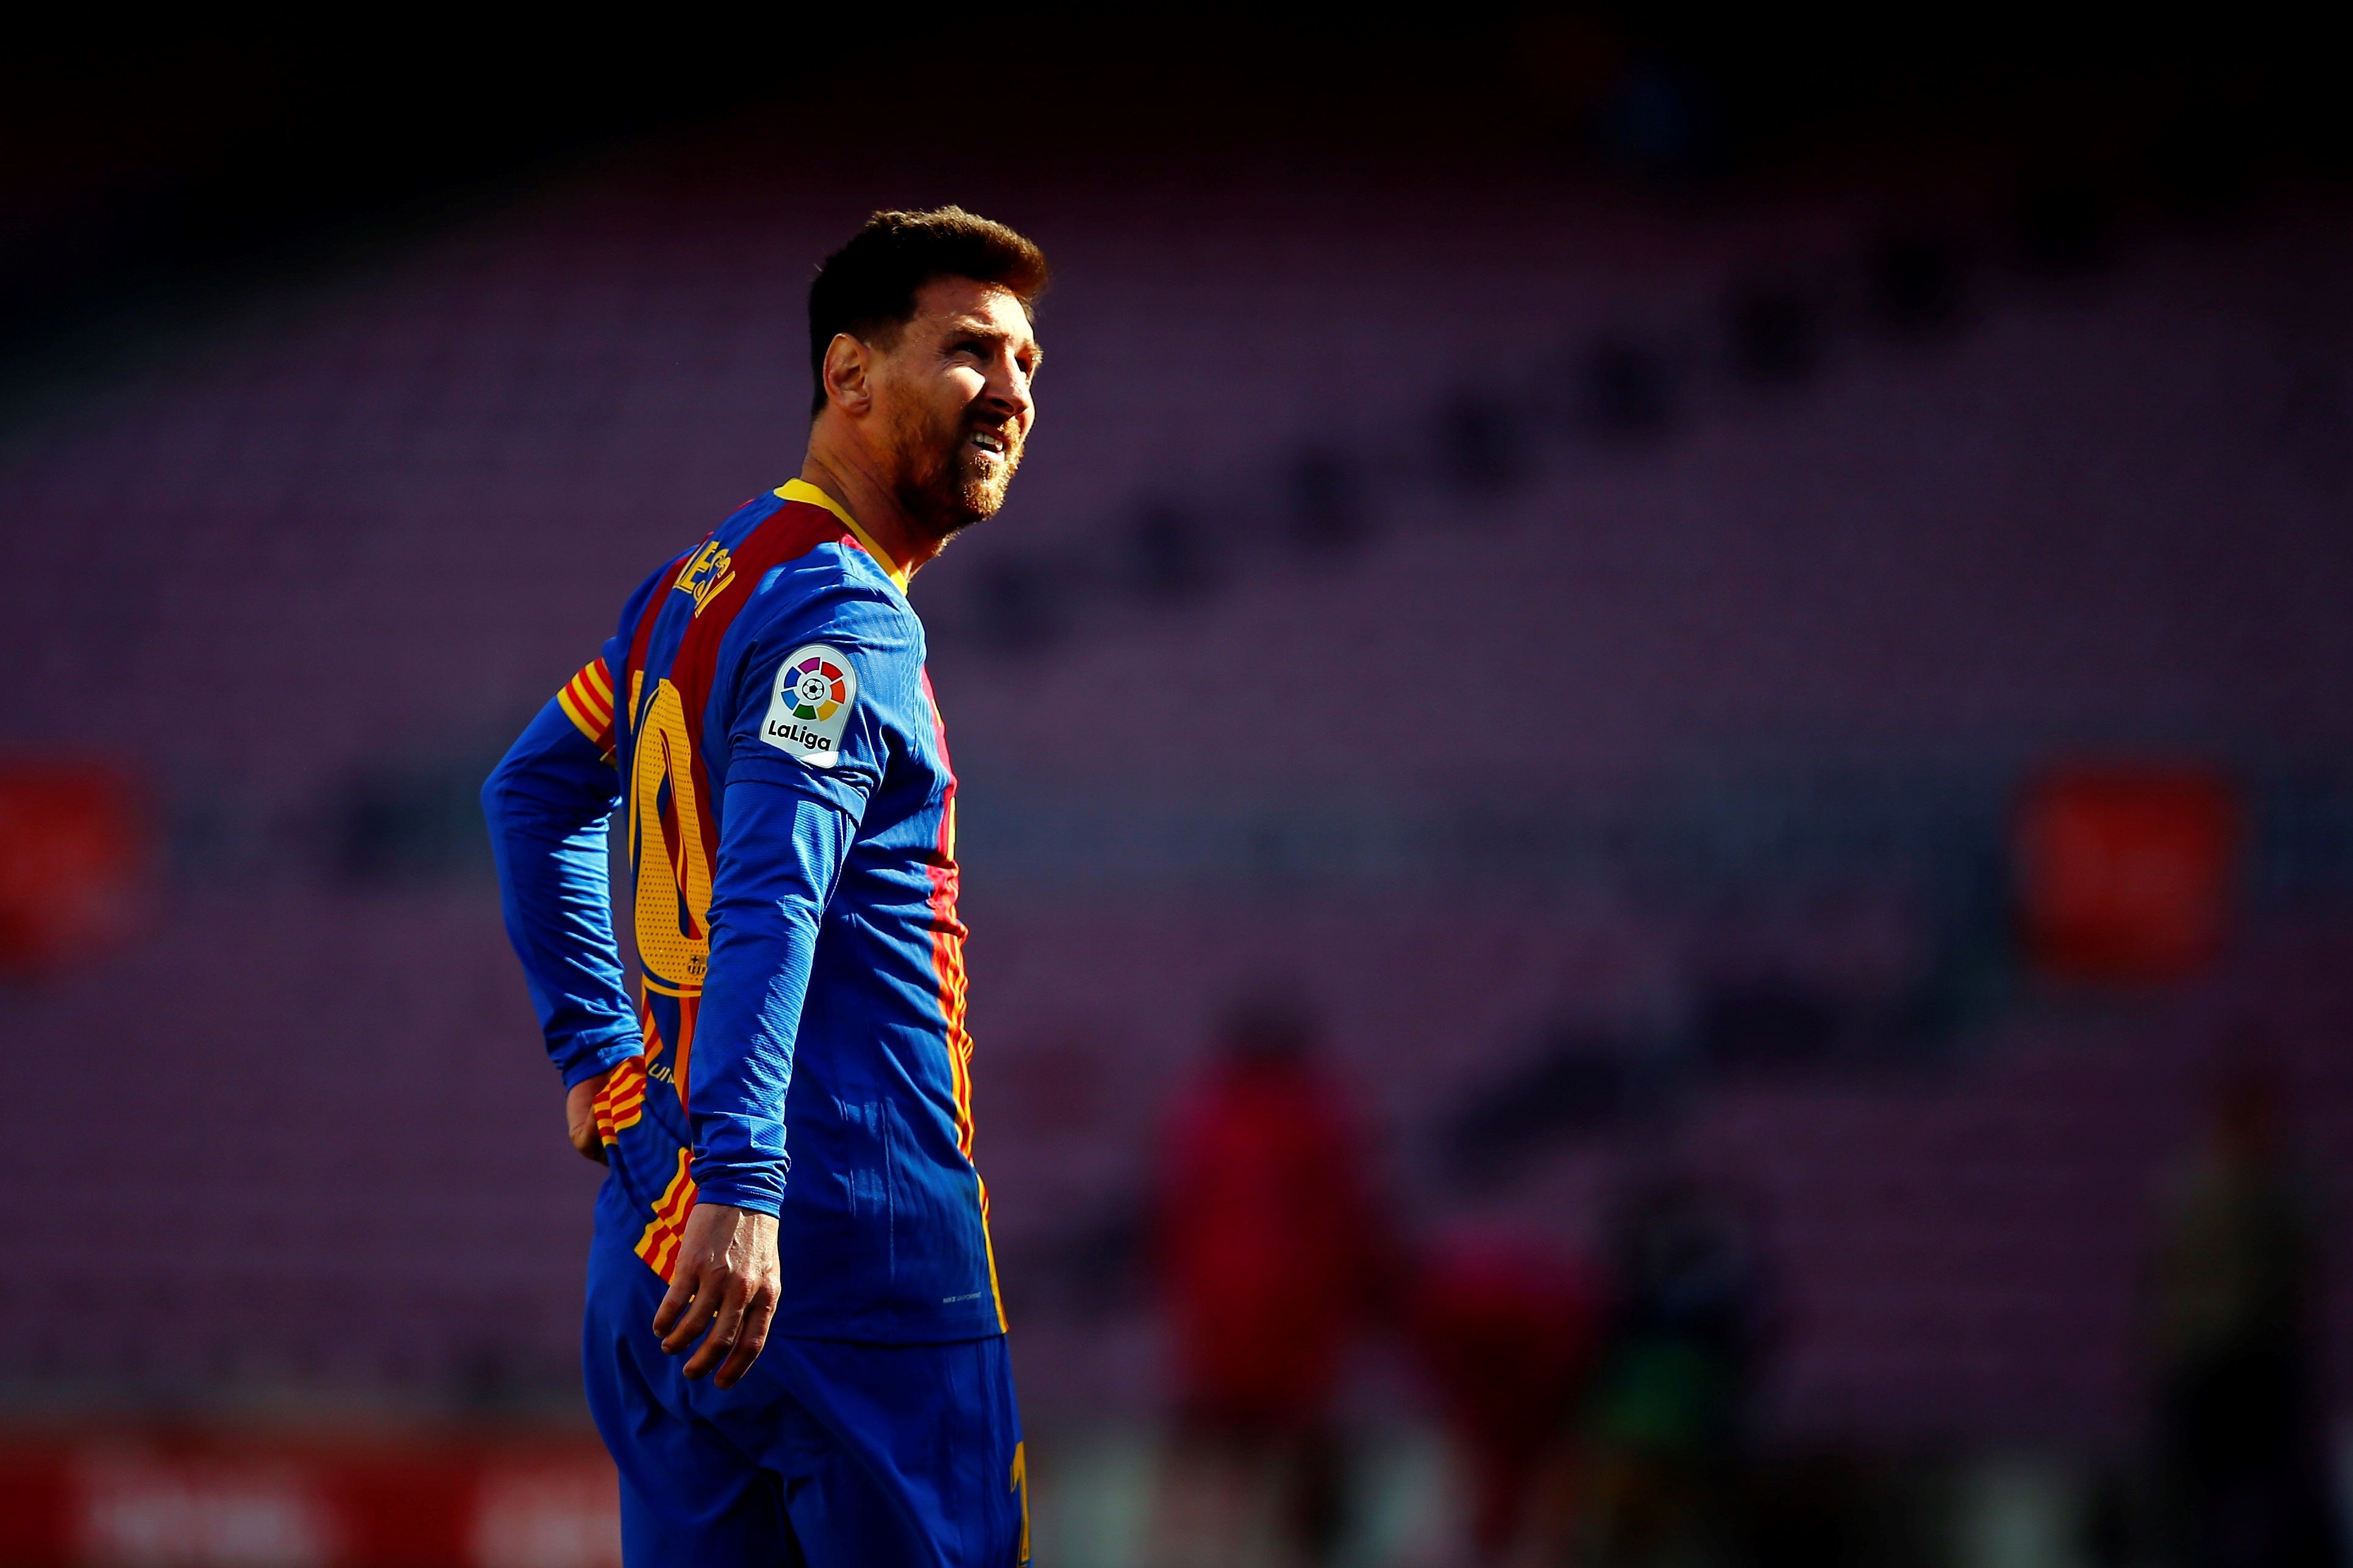 El jugador del FC Barcelona Leo Messi durante un juego ante el Atlético de Madrid. Ahora mantiene en vilo al mundo del futbol debido a su renovación o no con el Barsa. Foto Prensa Libre: EFE.